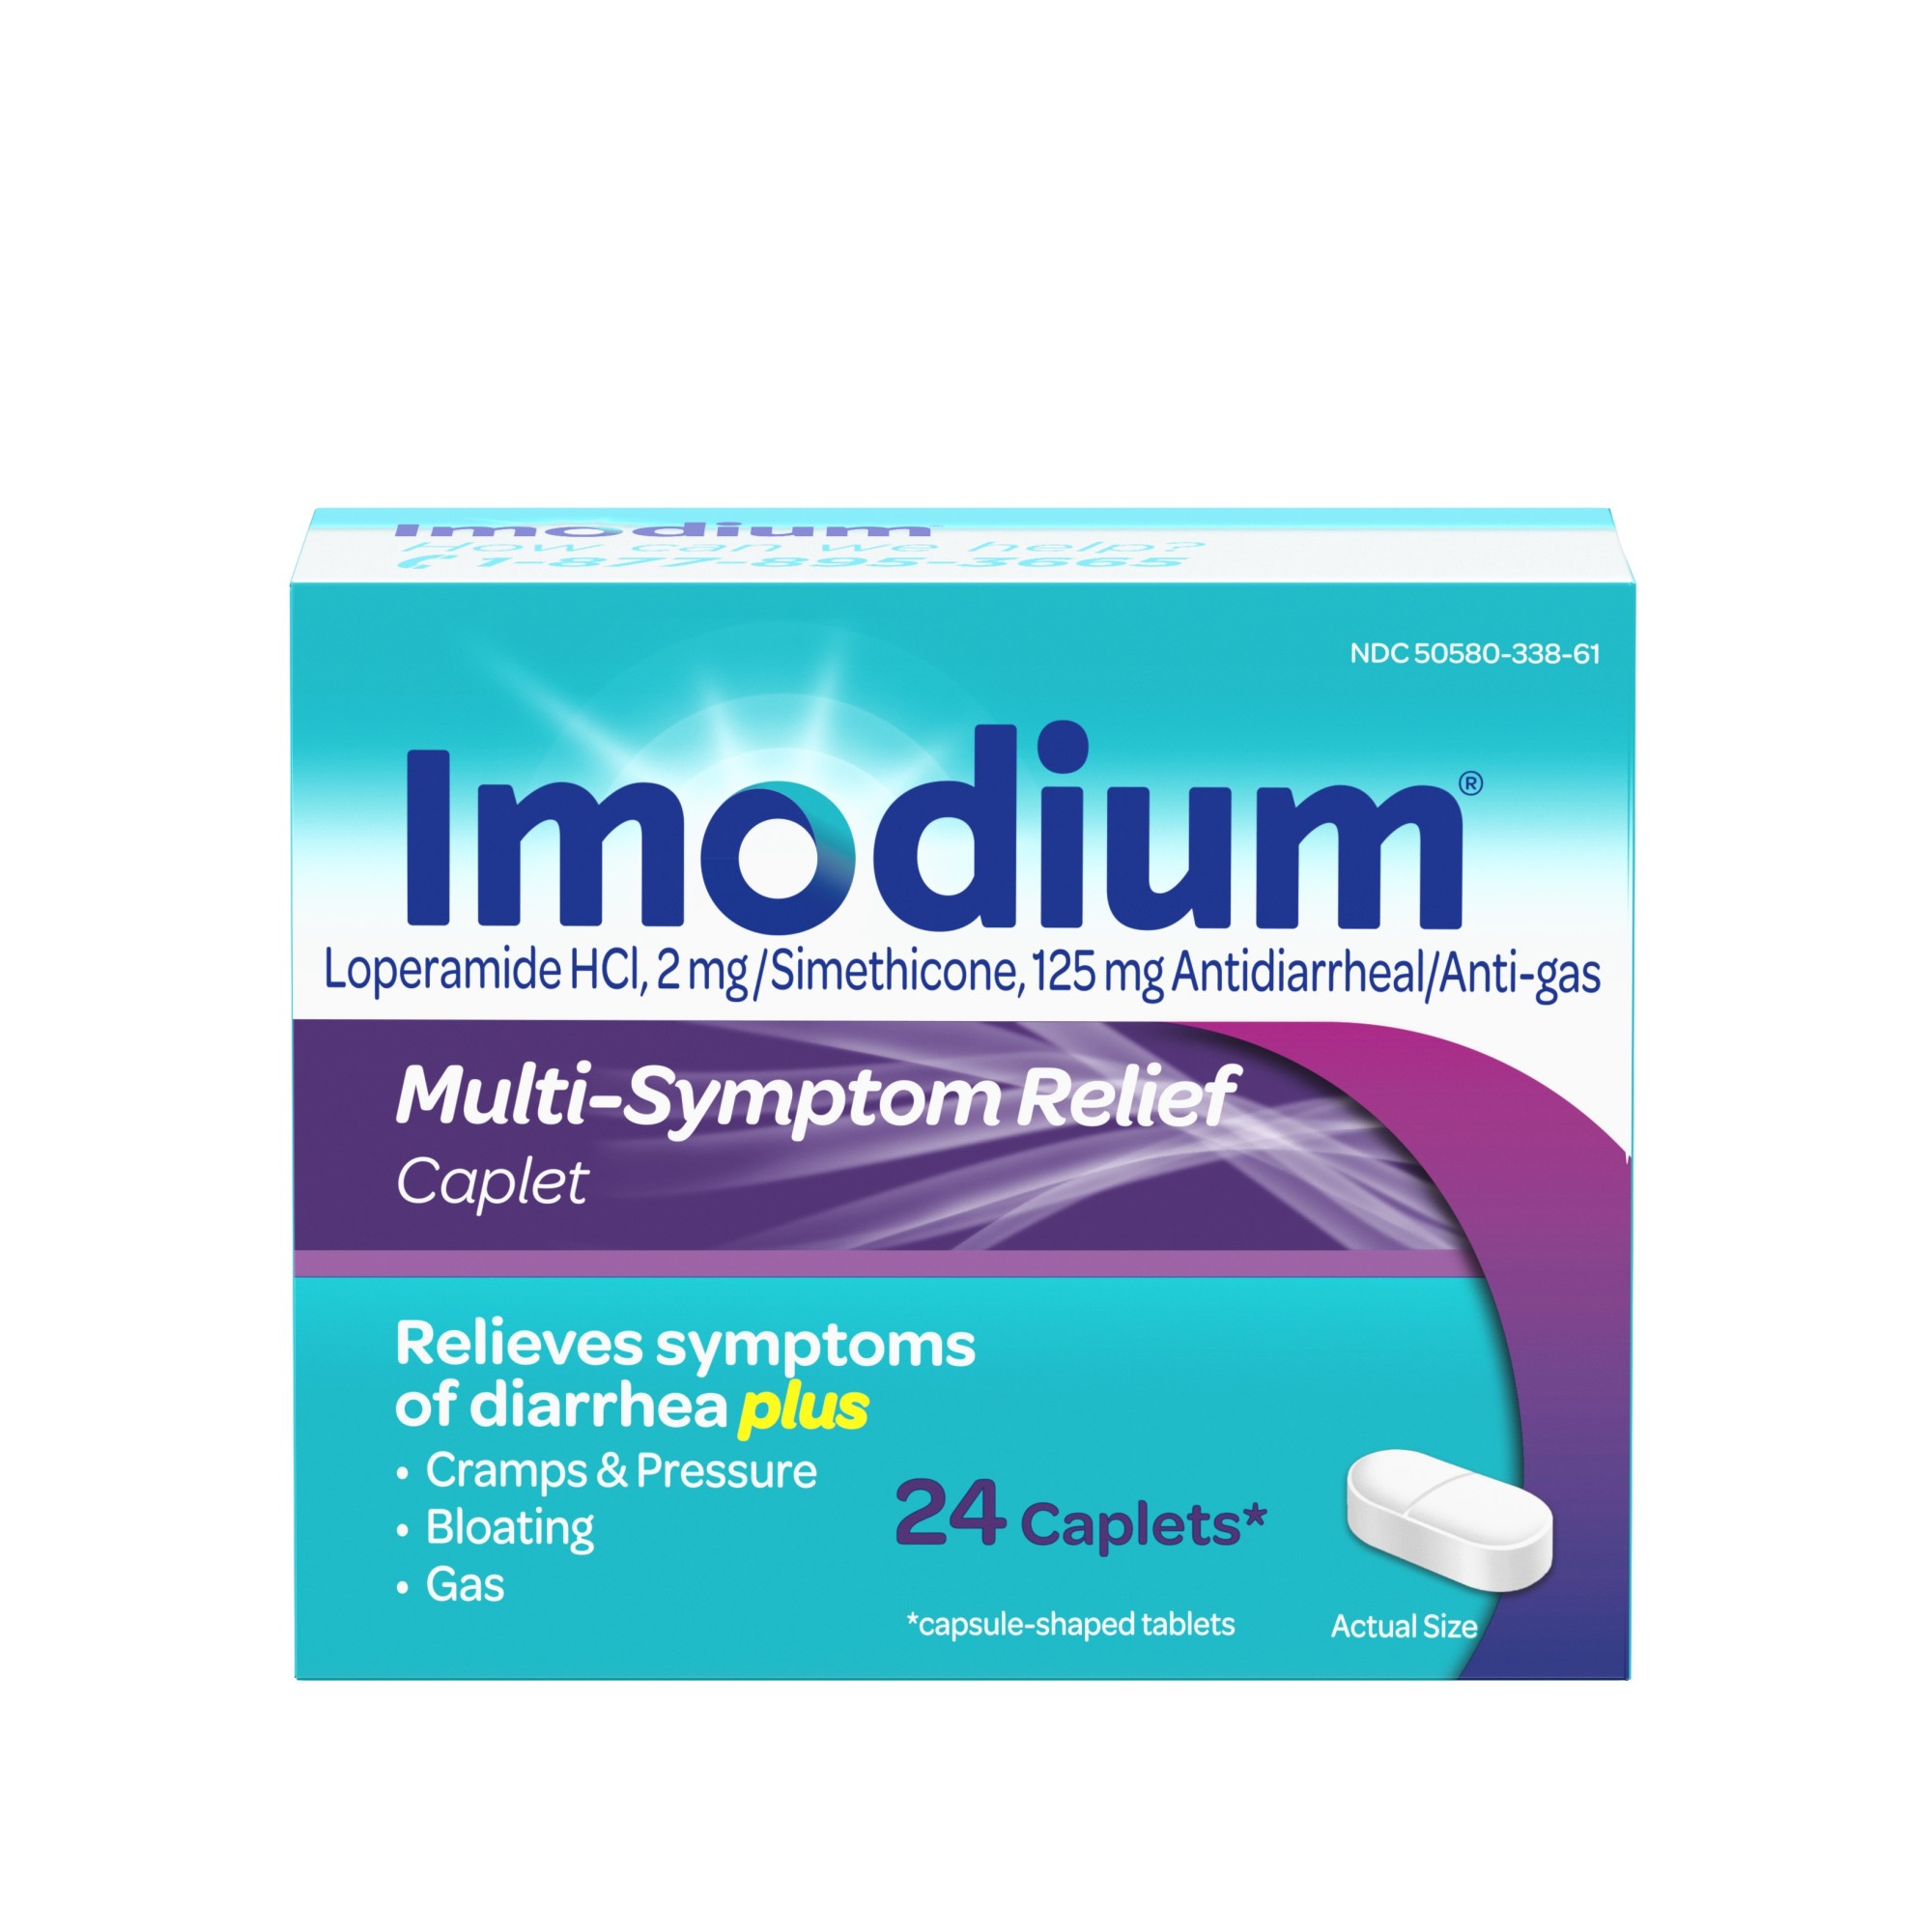 Order Imodium Multi-Symptom Relief Anti-Diarrheal Medicine Caplets - 24 ct food online from Rite Aid store, ELMIRA on bringmethat.com